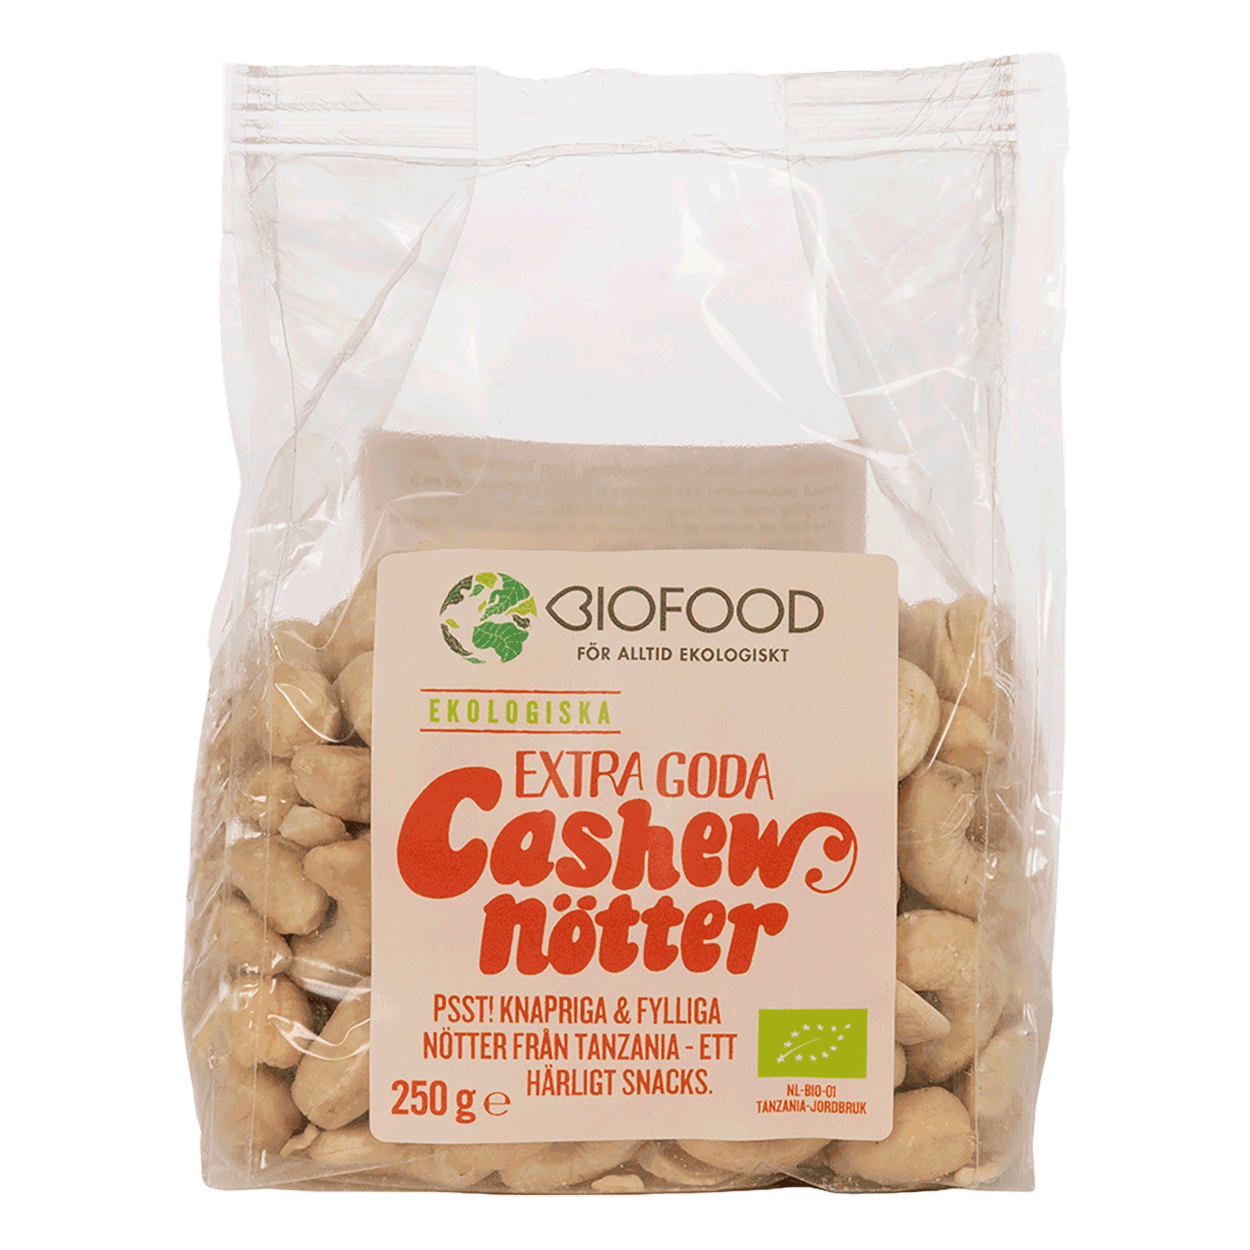 Cashew i förpackning